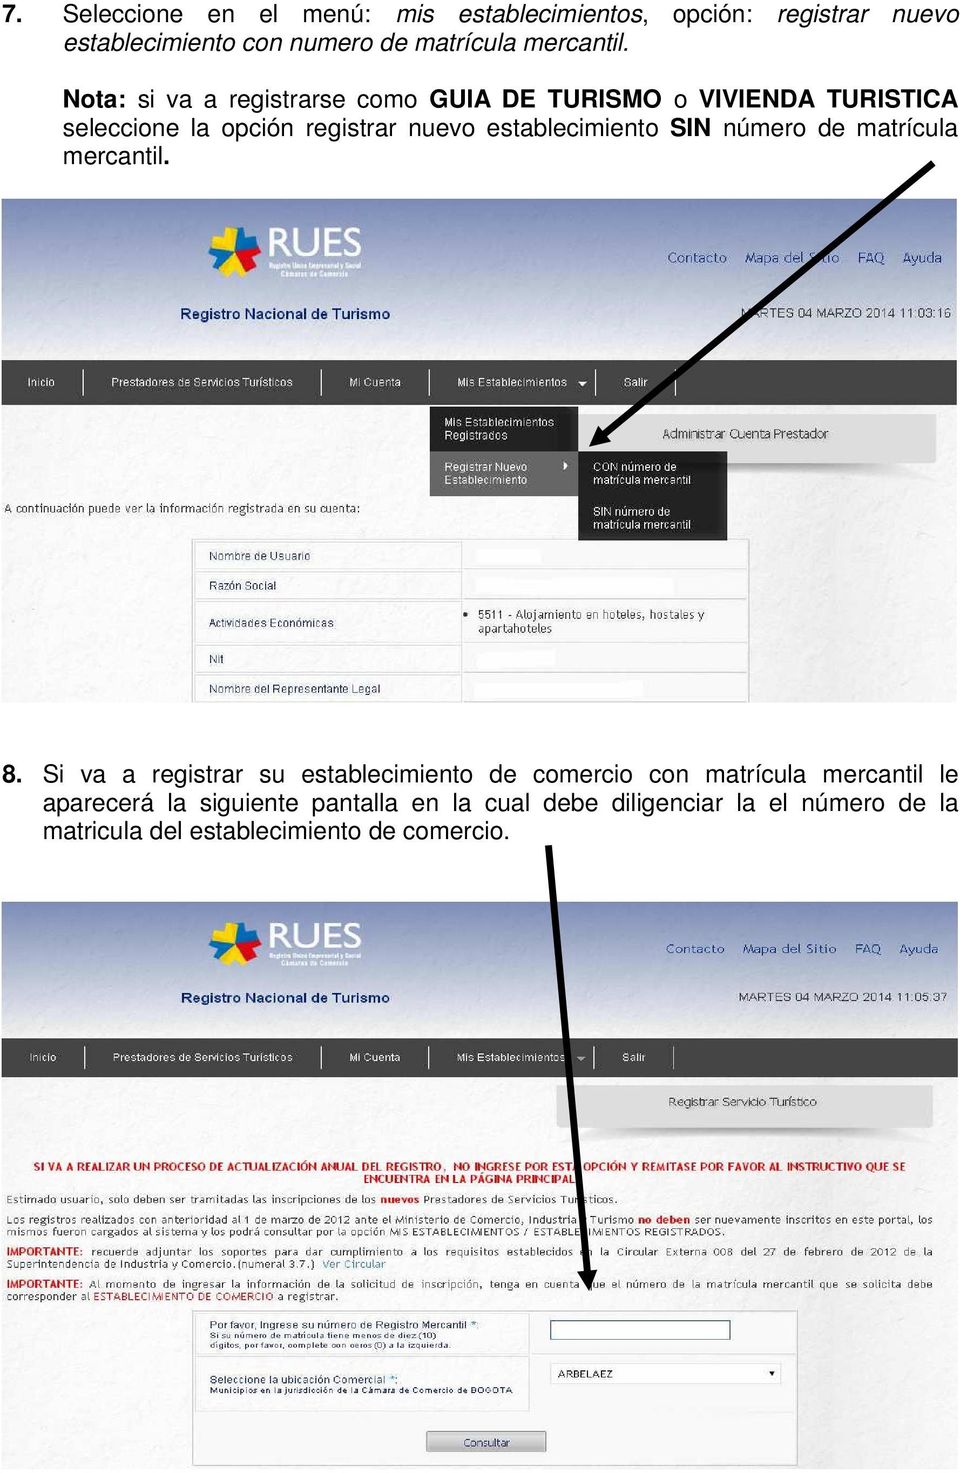 Nota: si va a registrarse como GUIA DE TURISMO o VIVIENDA TURISTICA seleccione la opción registrar nuevo